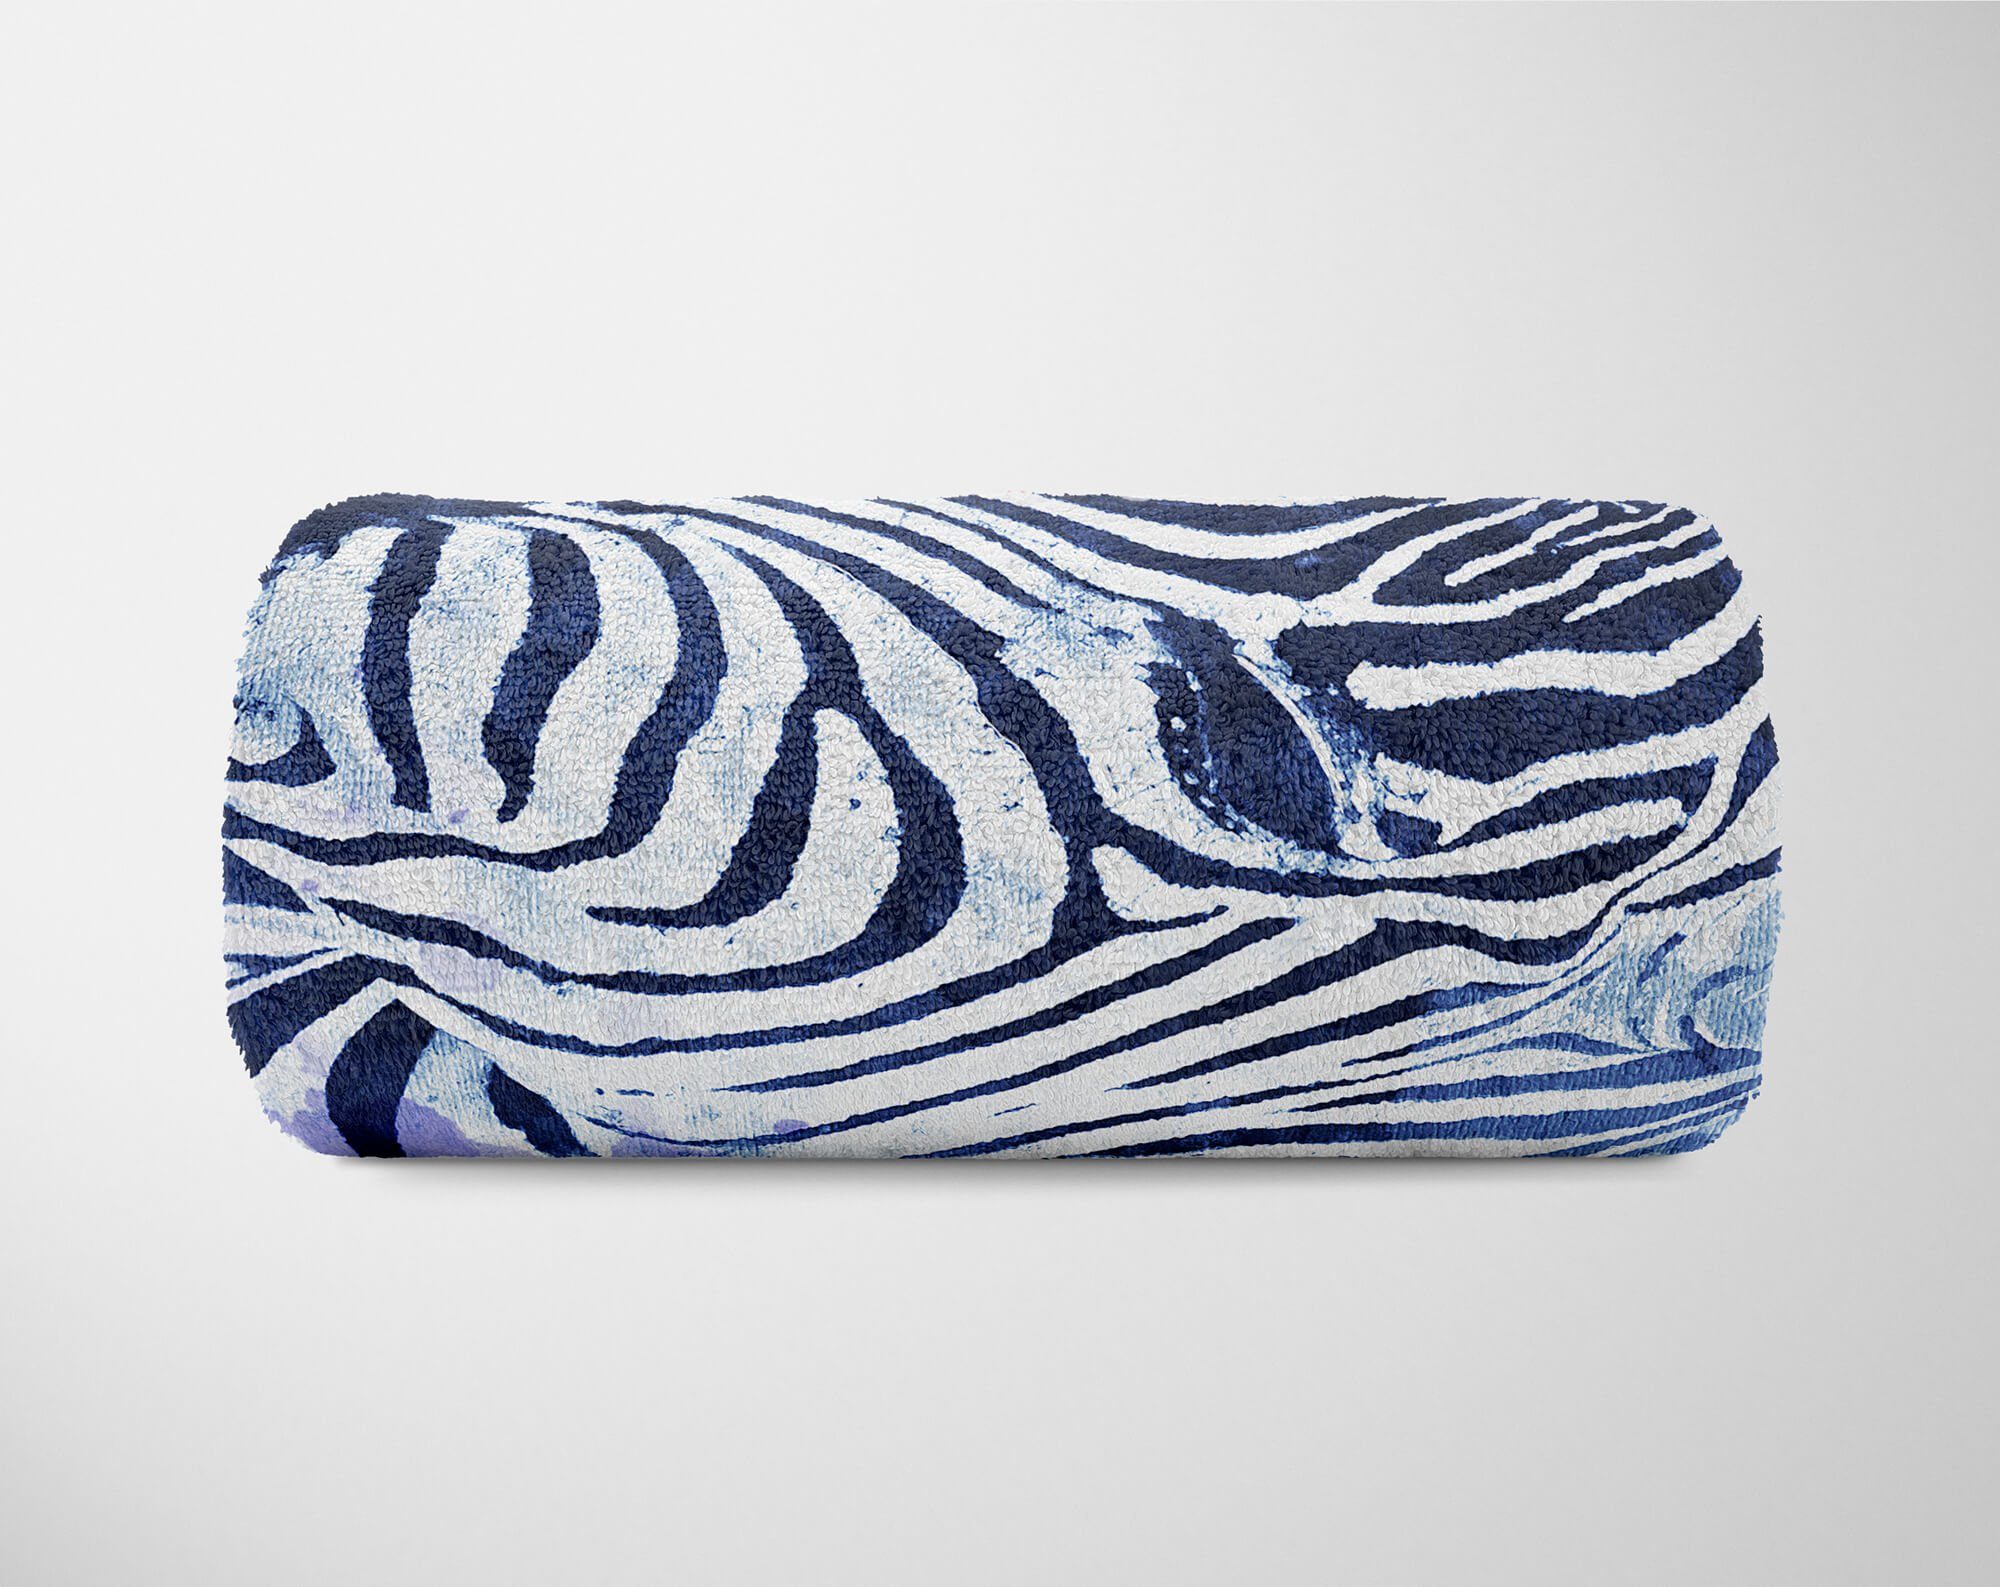 Handtuch Zebra Tier Serie Handtücher Motiv, SplashArt Art Baumwolle-Polyester-Mix Sinus (1-St), Strandhandtuch Kuscheldecke Kunstvoll Handtuch Saunatuch